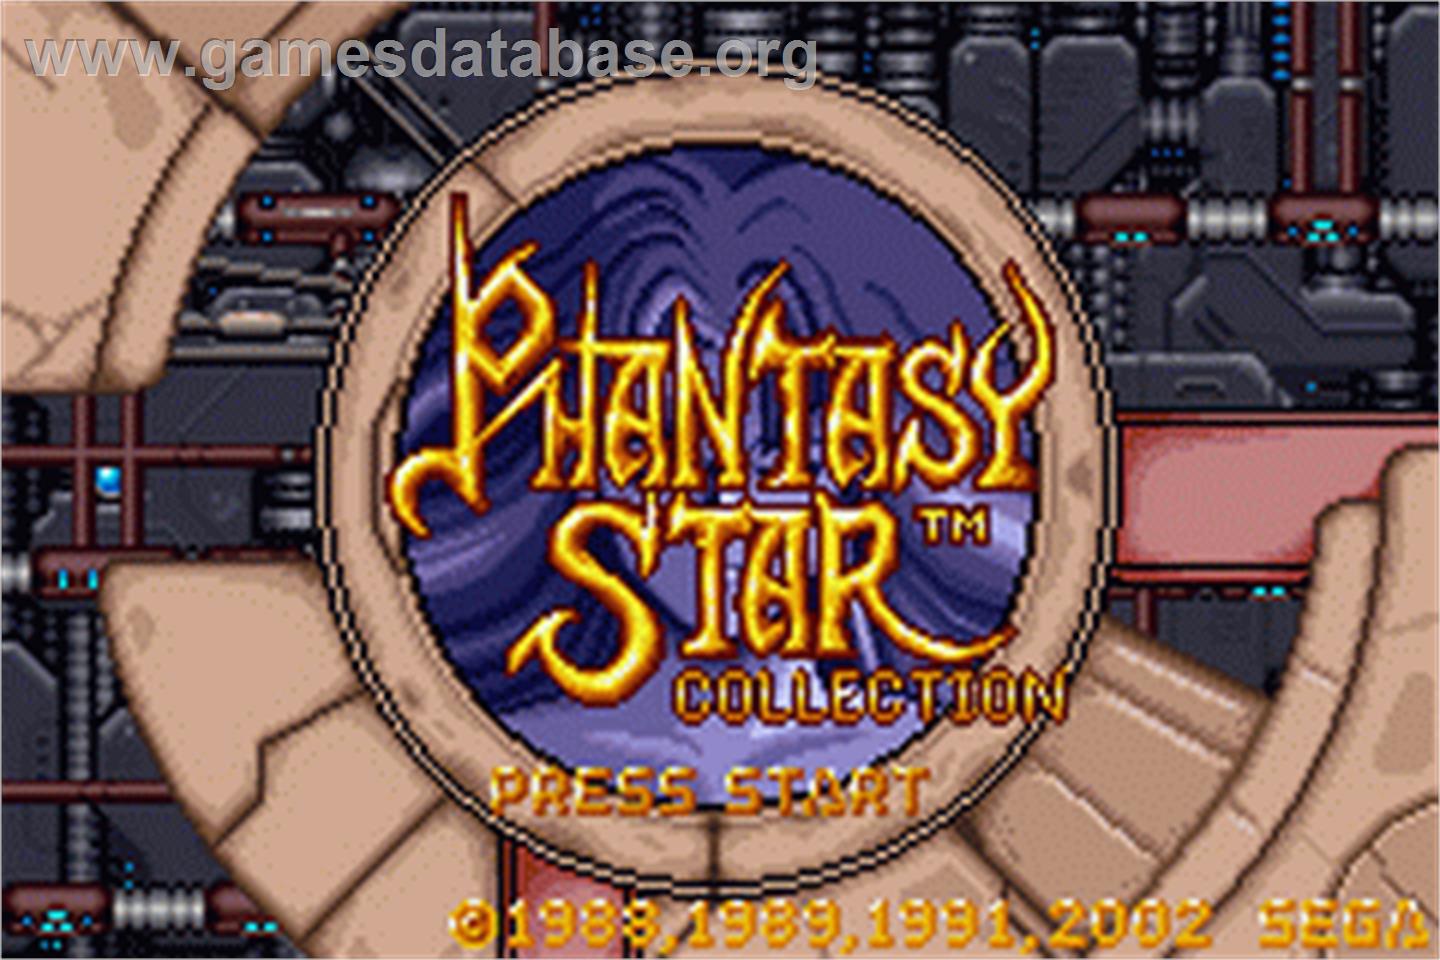 Phantasy Star Collection - Nintendo Game Boy Advance - Artwork - Title Screen